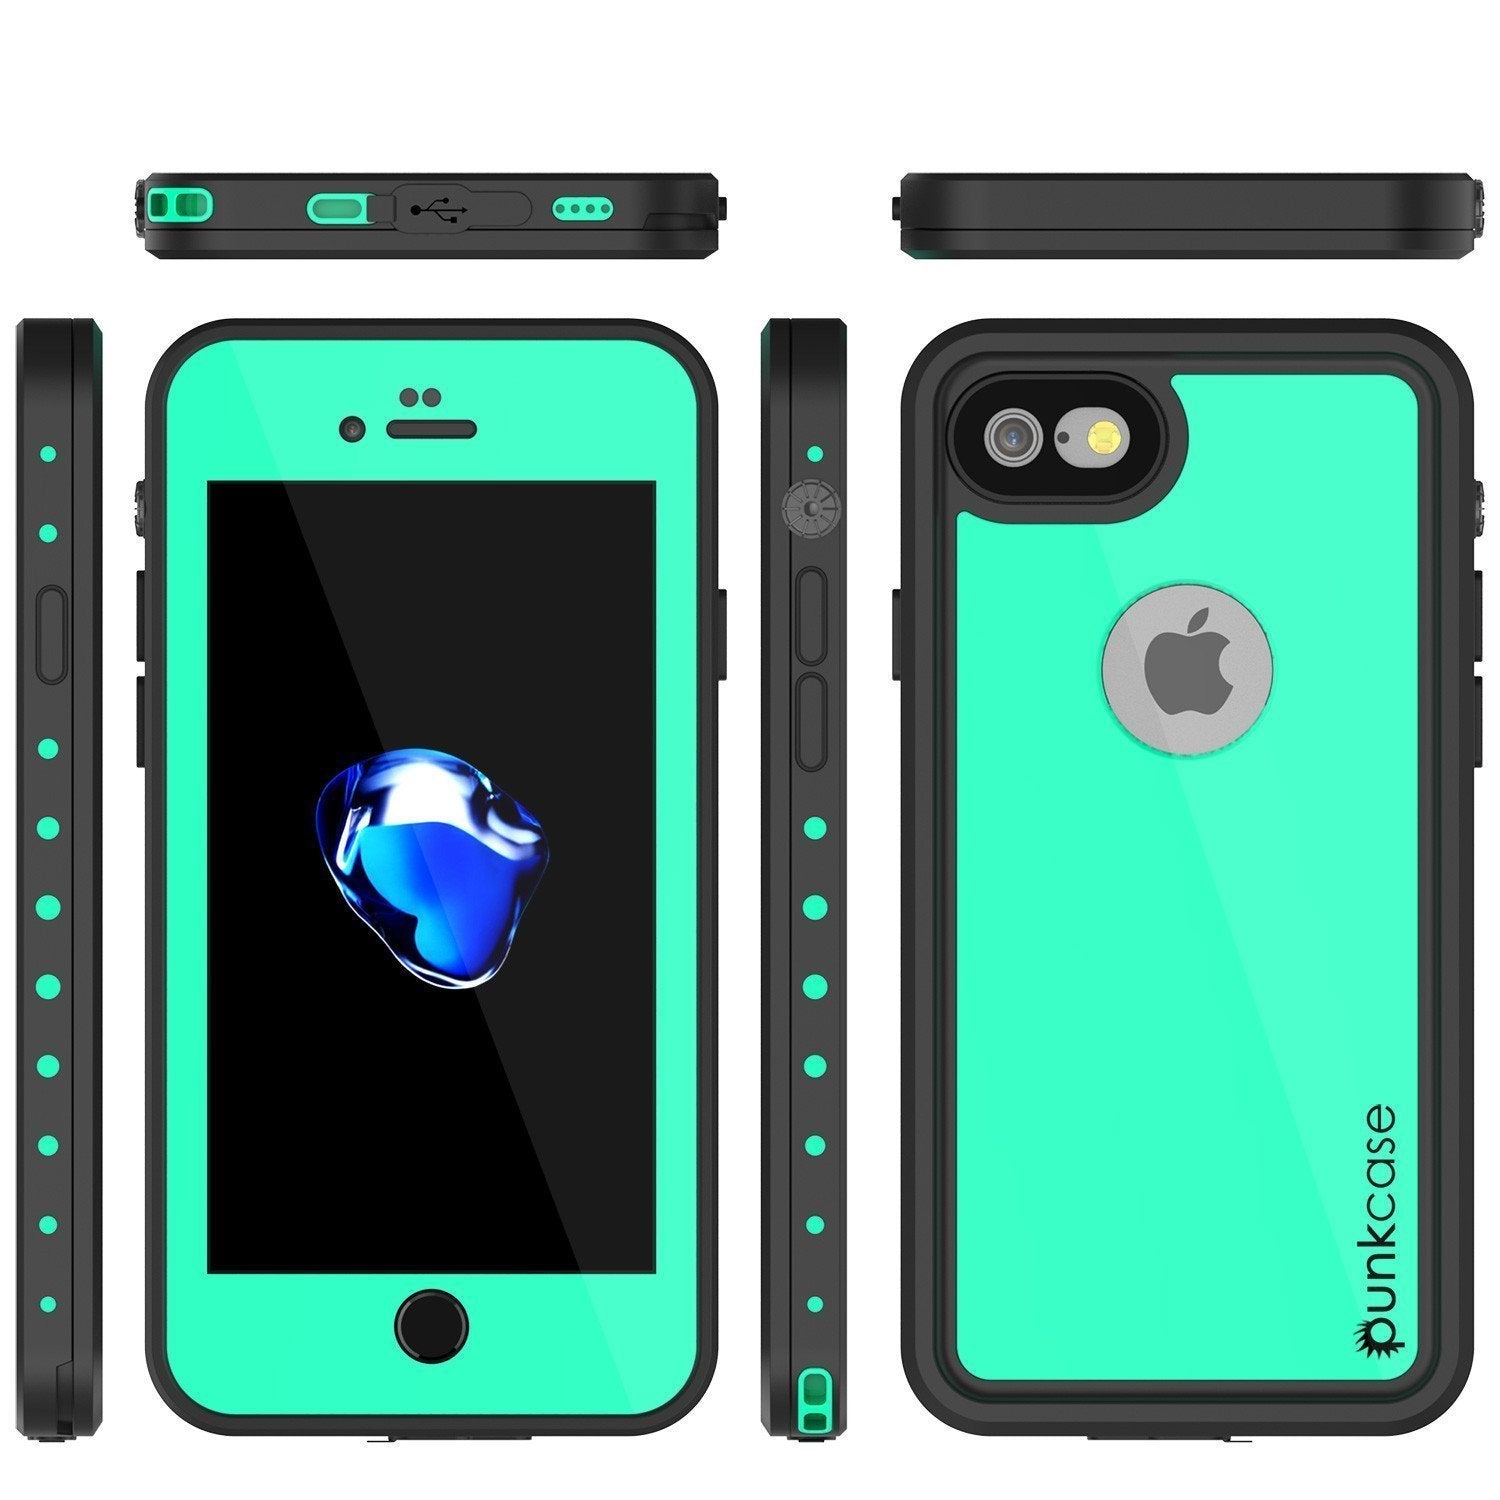 iPhone SE (4.7") Waterproof Case, Punkcase [Teal] [StudStar Series] [Slim Fit] [IP68 Certified]] [Dirtproof] [Snowproof]